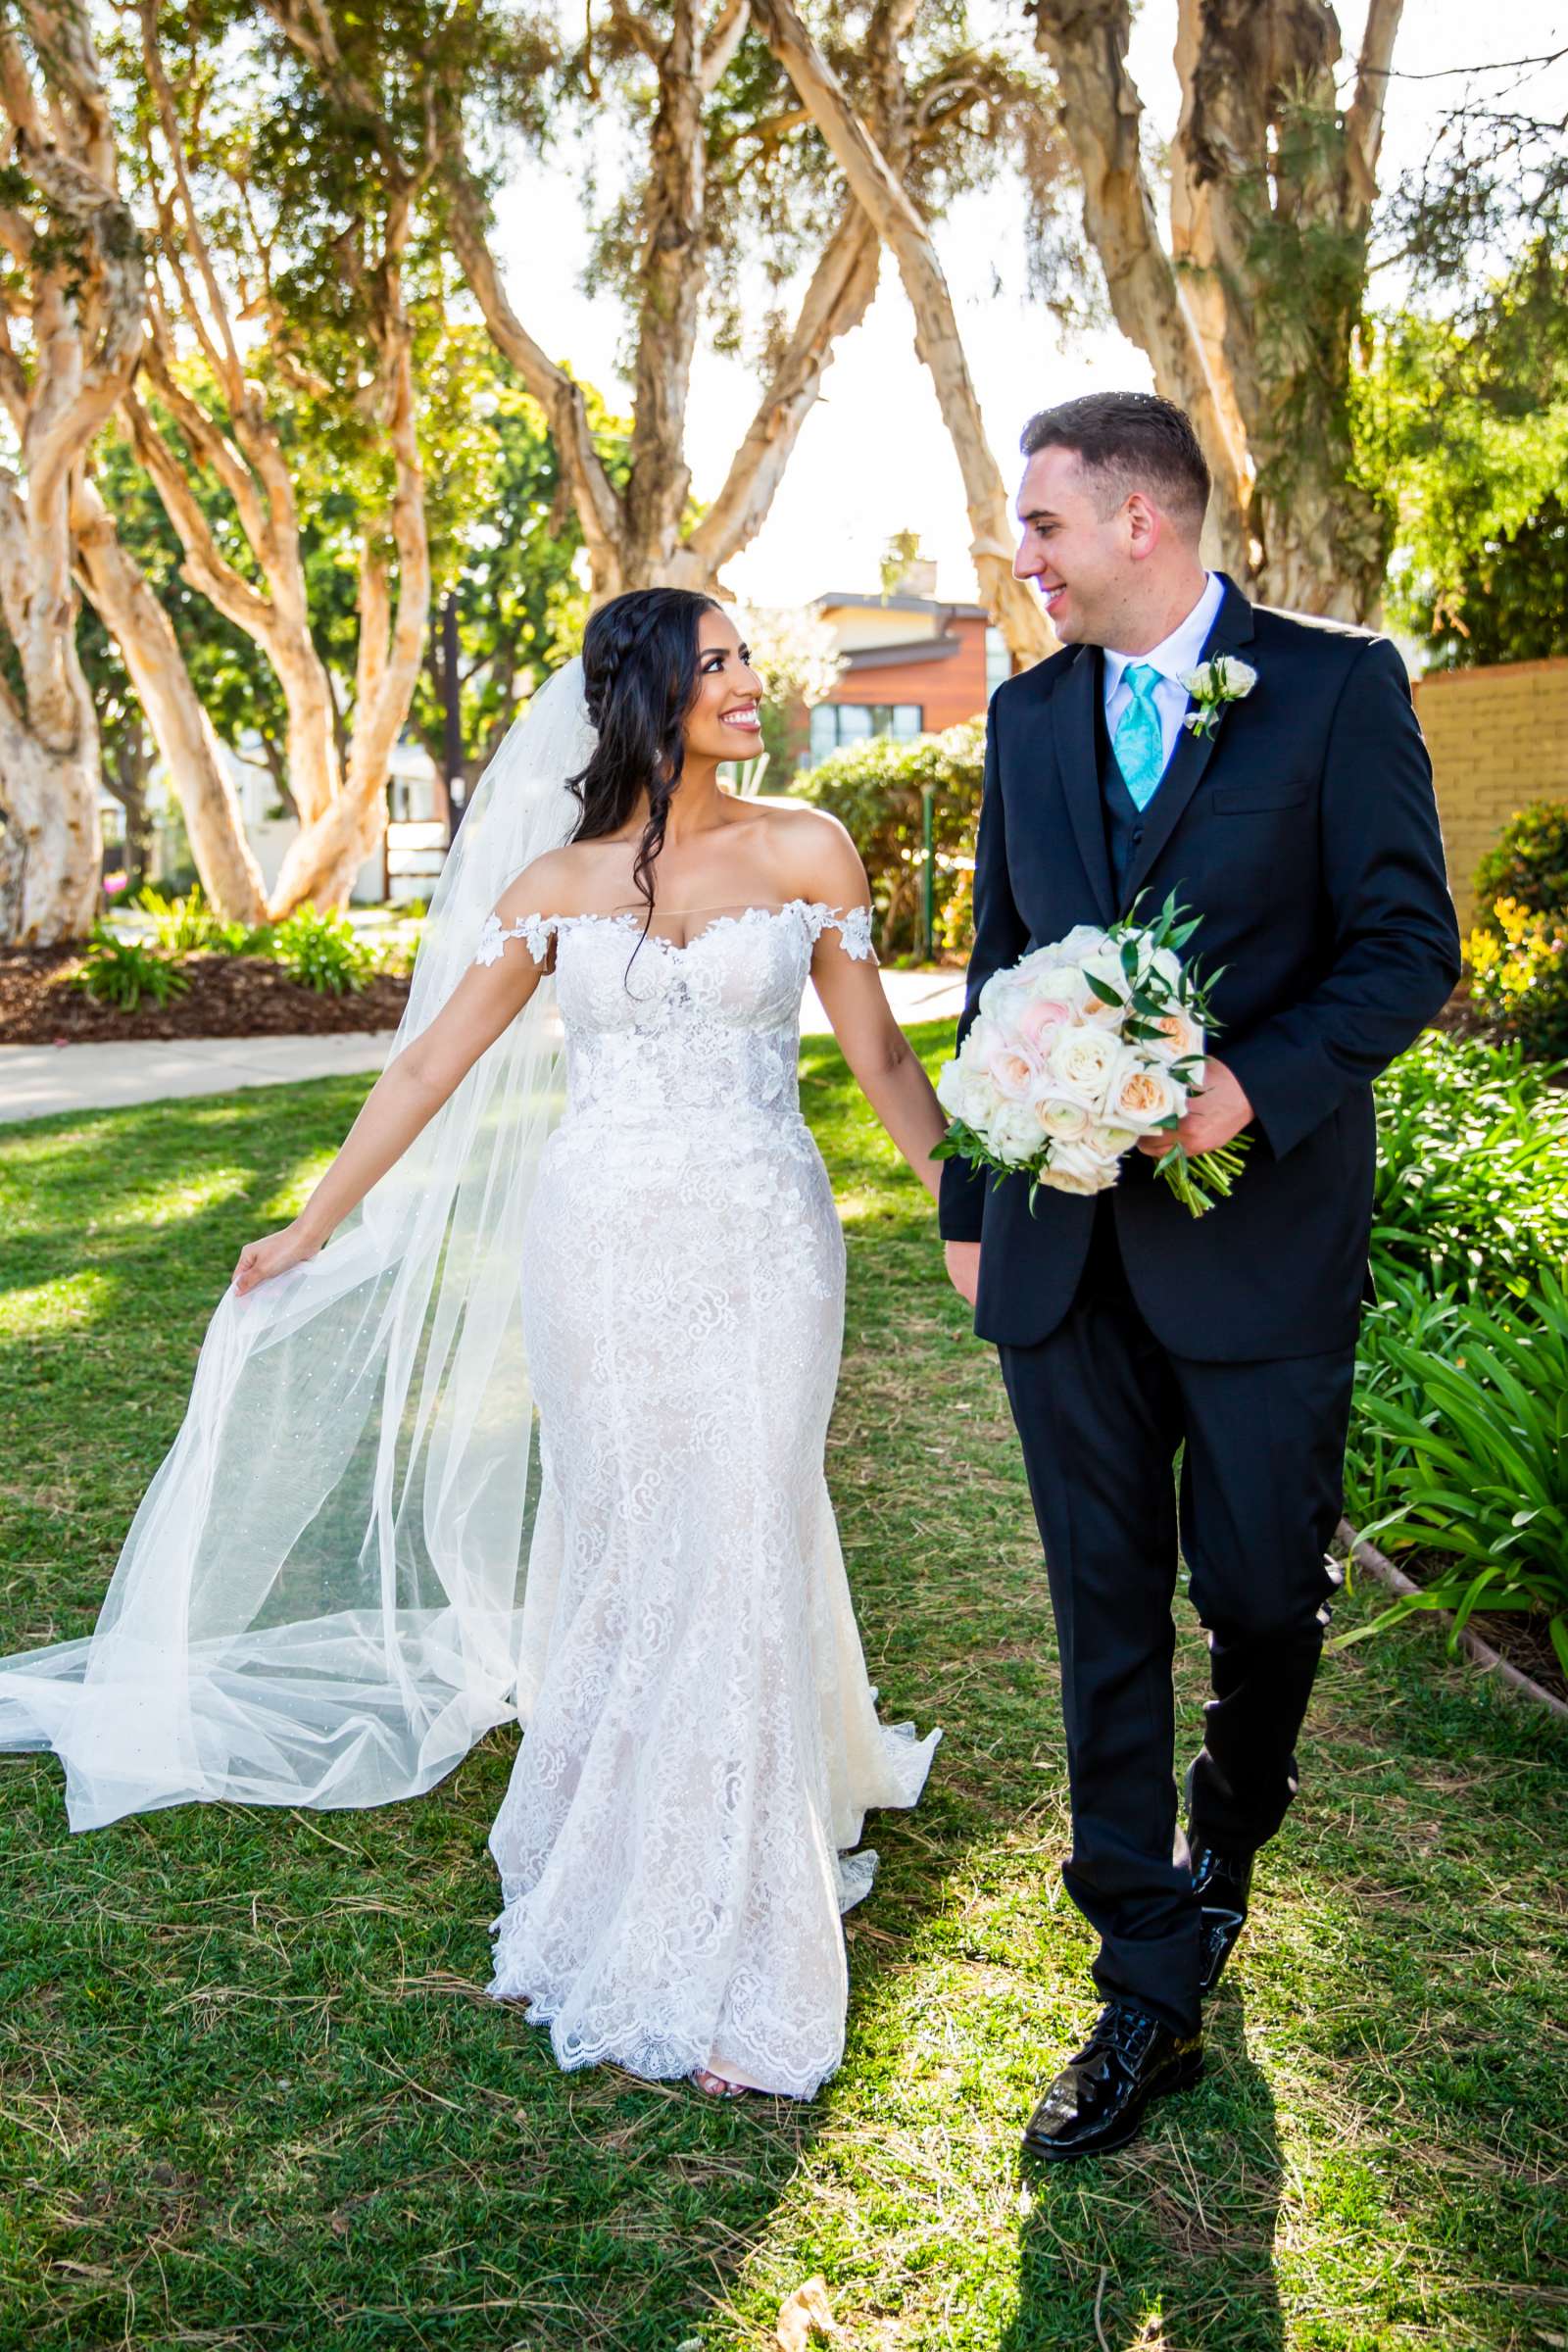 Hotel Del Coronado Wedding, Sarah and Kyle Wedding Photo #22 by True Photography